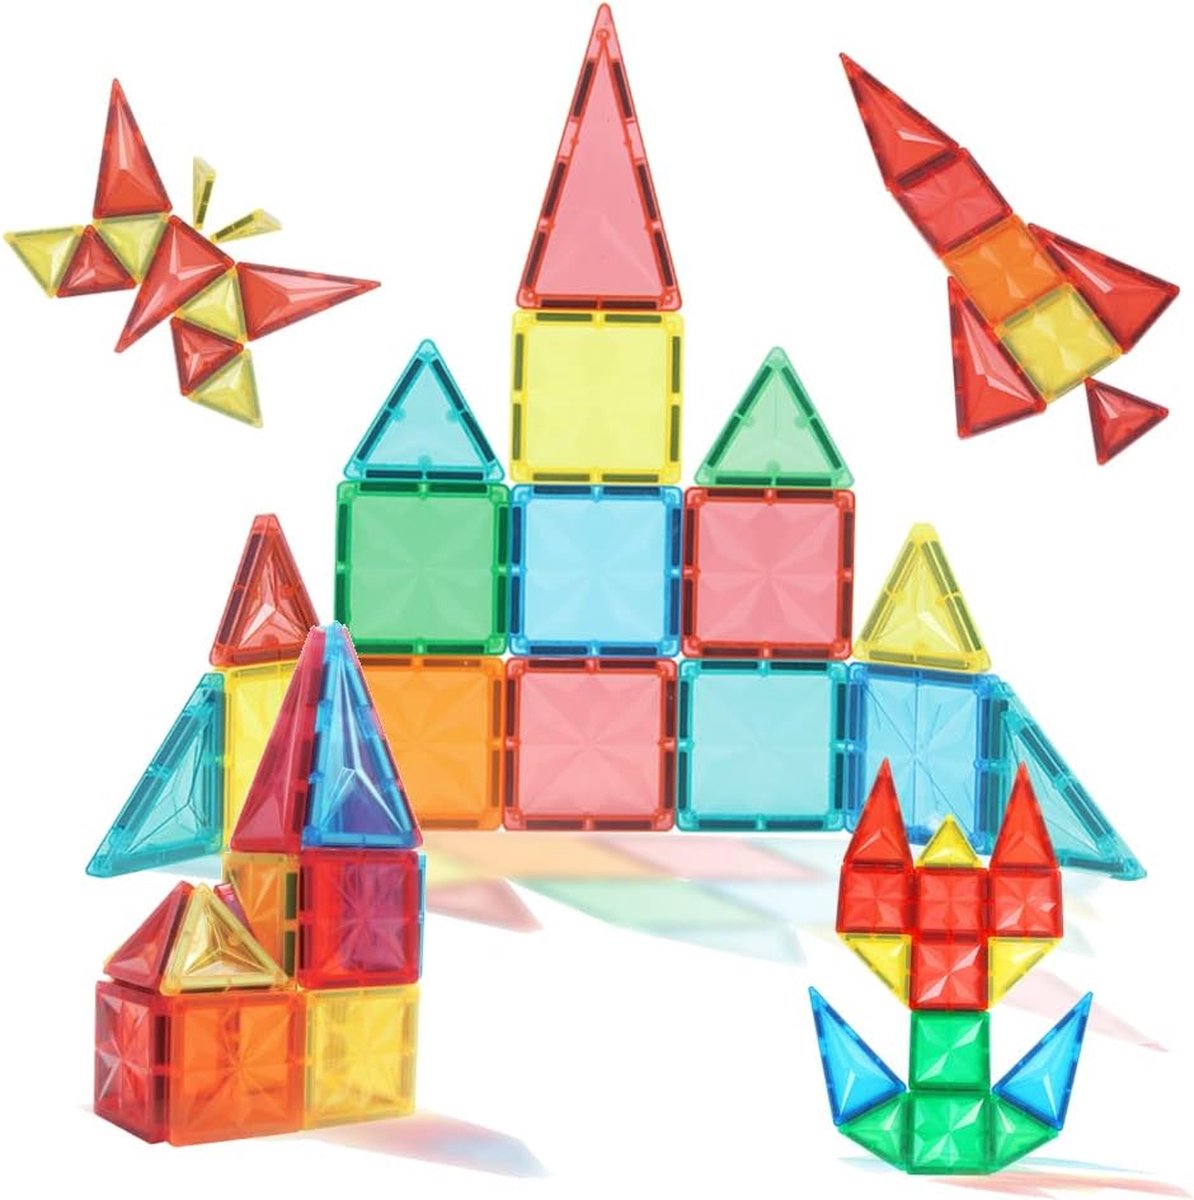 Magnetische bouwstenen bouwblokken 30 stuks - voor kinderen jongens/meisjes vanaf 3 jaar - Educatieve speelgoed, ontwikkeling van verbeelding, creatief denken, concentratie